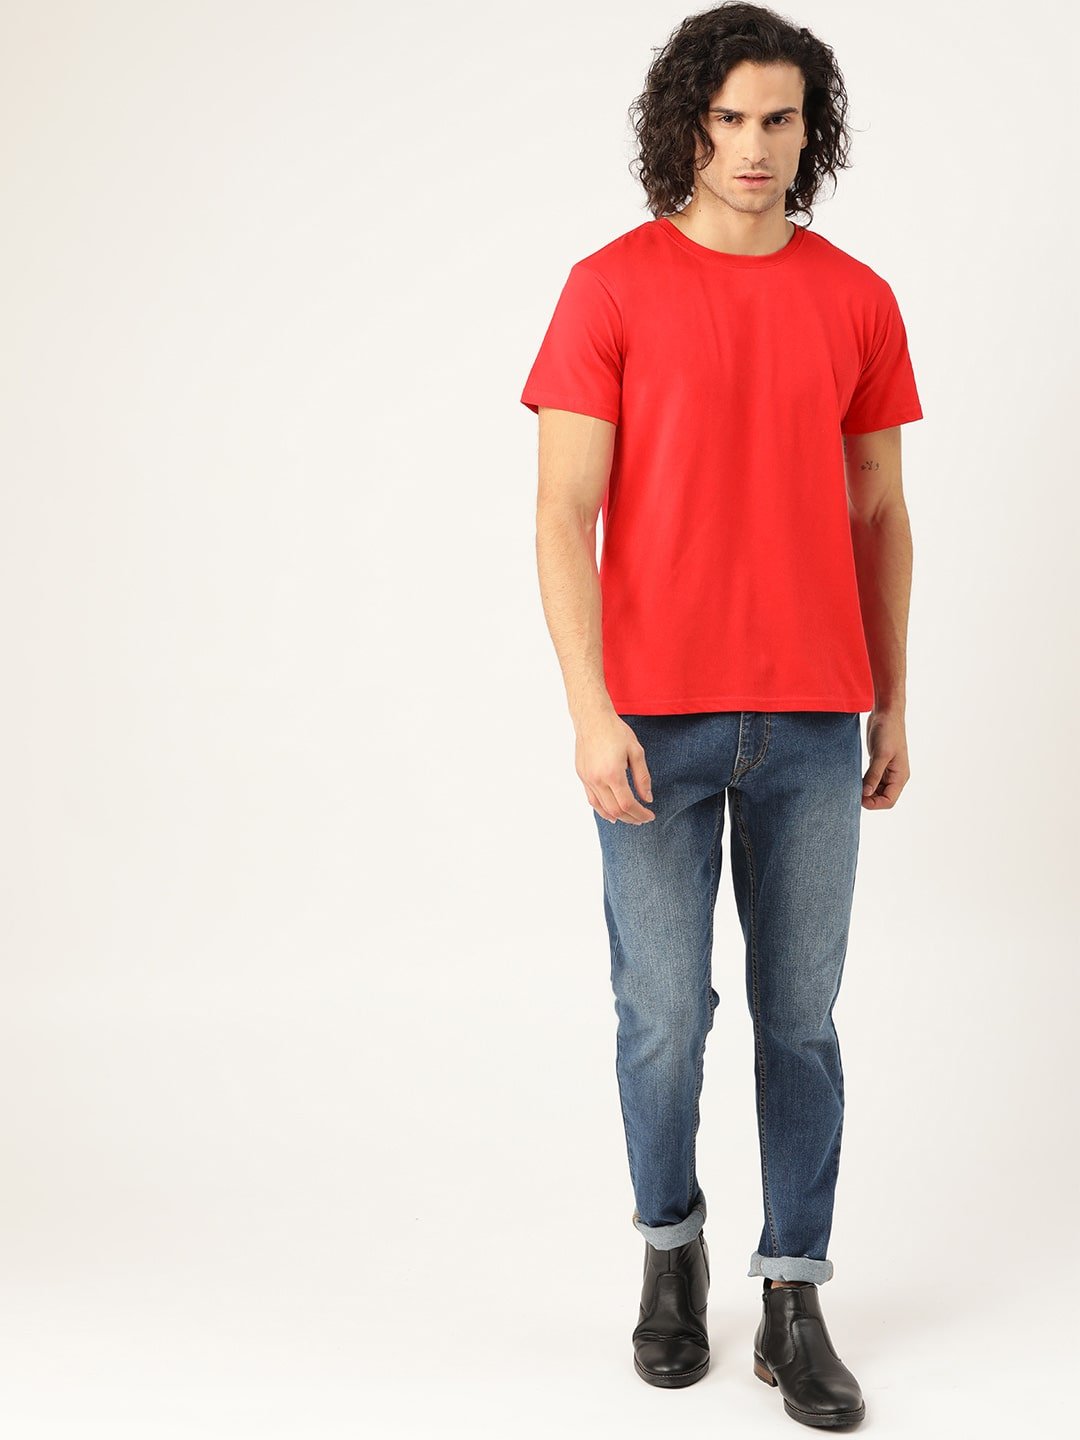 Hinglish Men's Red Round Neck  T-Shirt